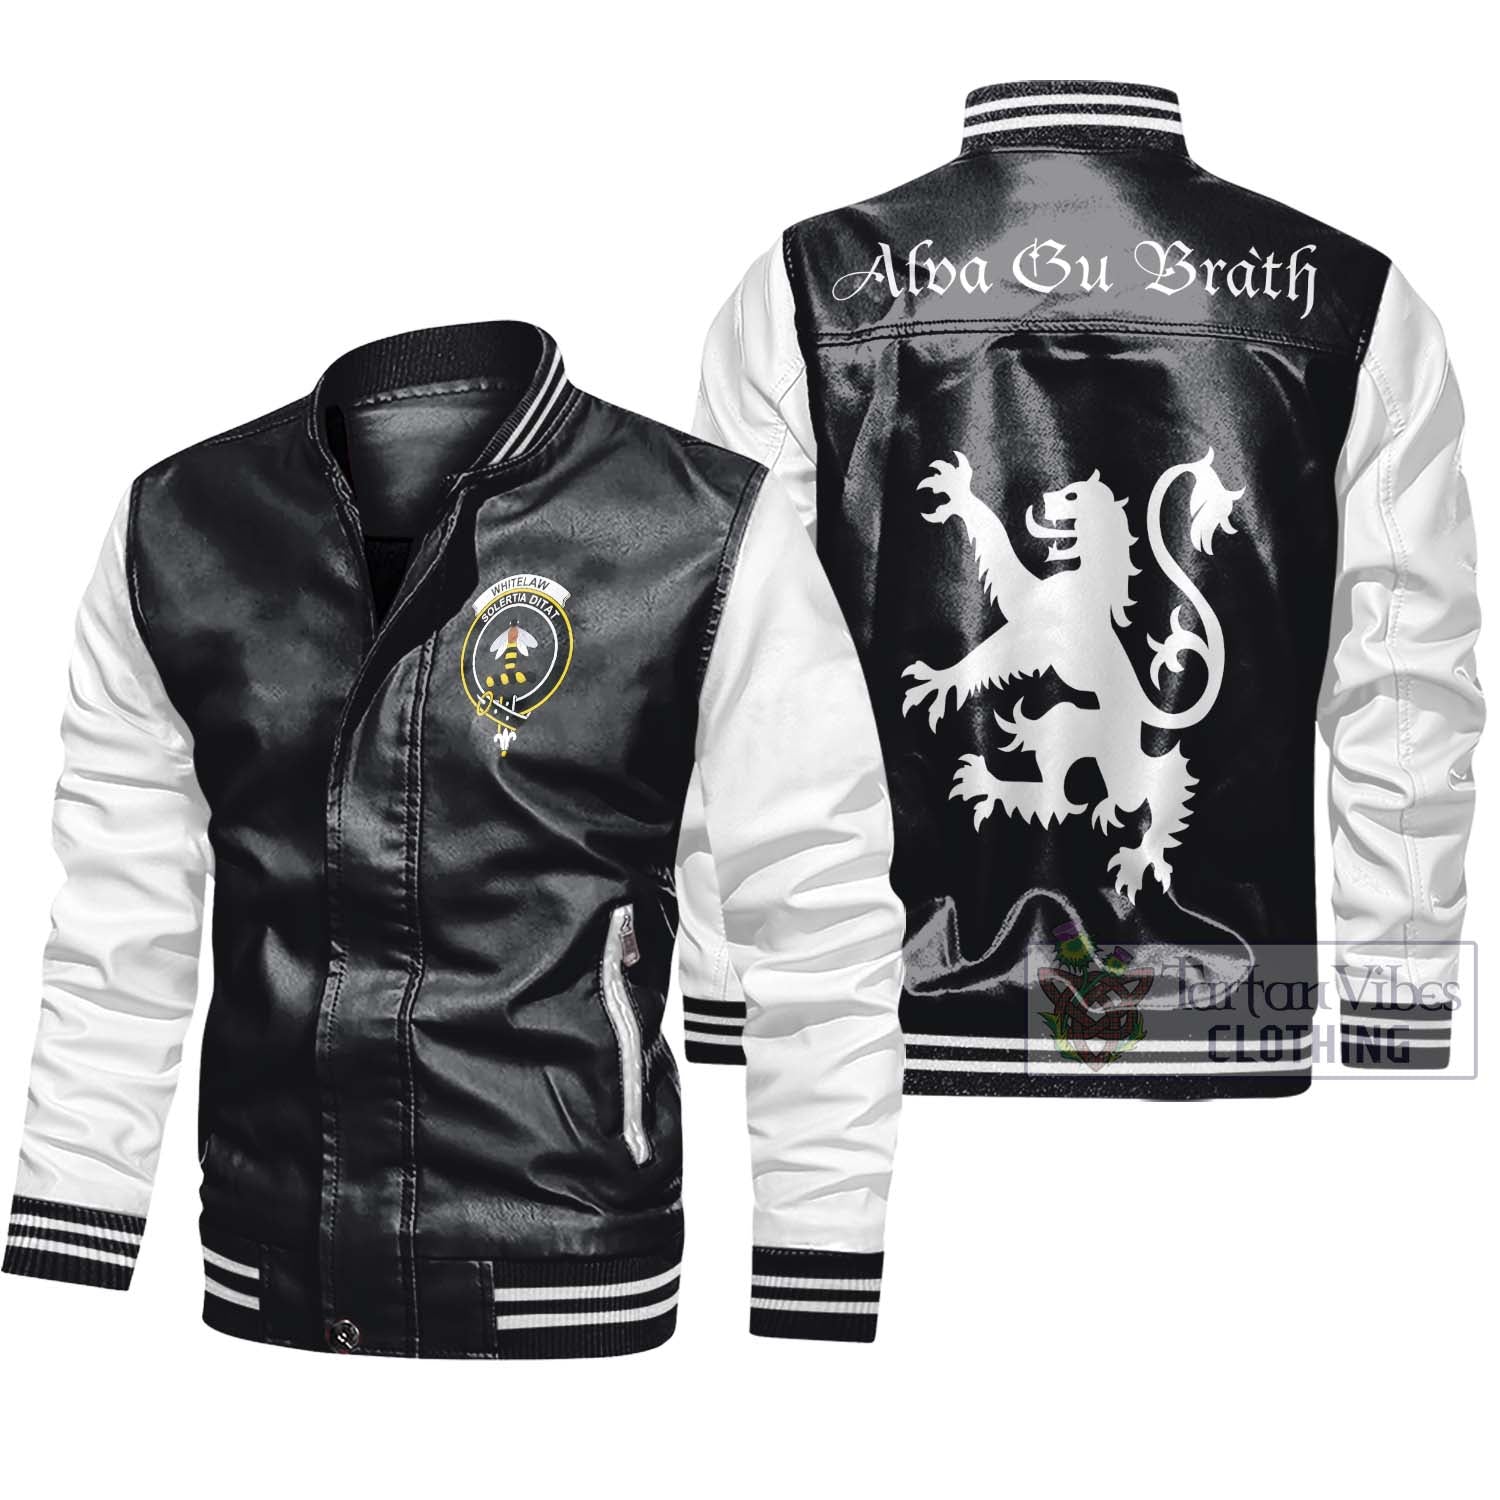 Tartan Vibes Clothing Whitelaw Family Crest Leather Bomber Jacket Lion Rampant Alba Gu Brath Style